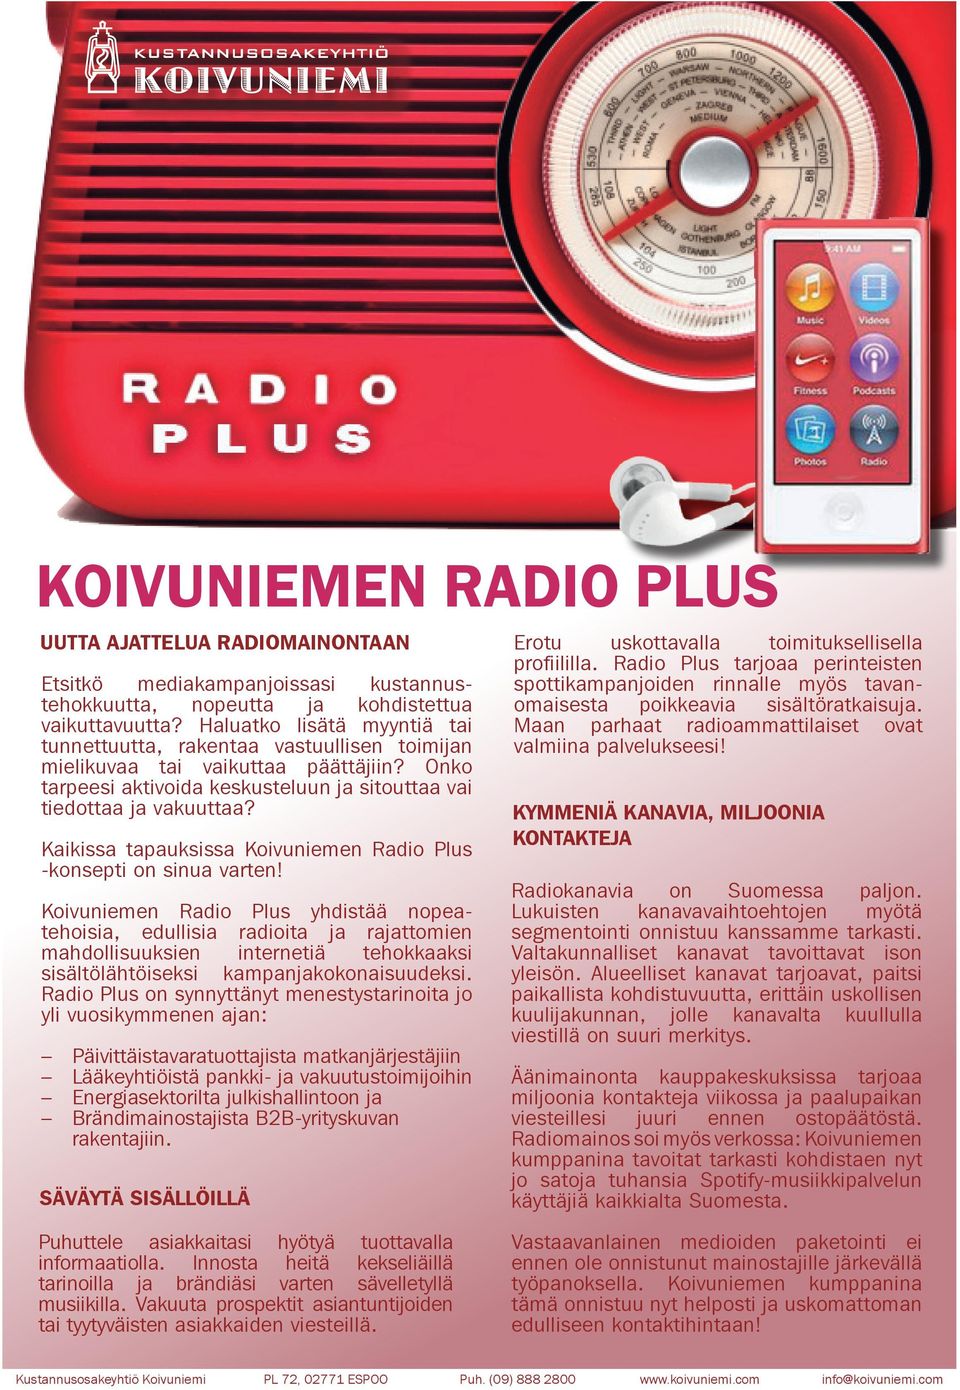 Kaikissa tapauksissa Koivuniemen Radio Plus -konsepti on sinua varten!